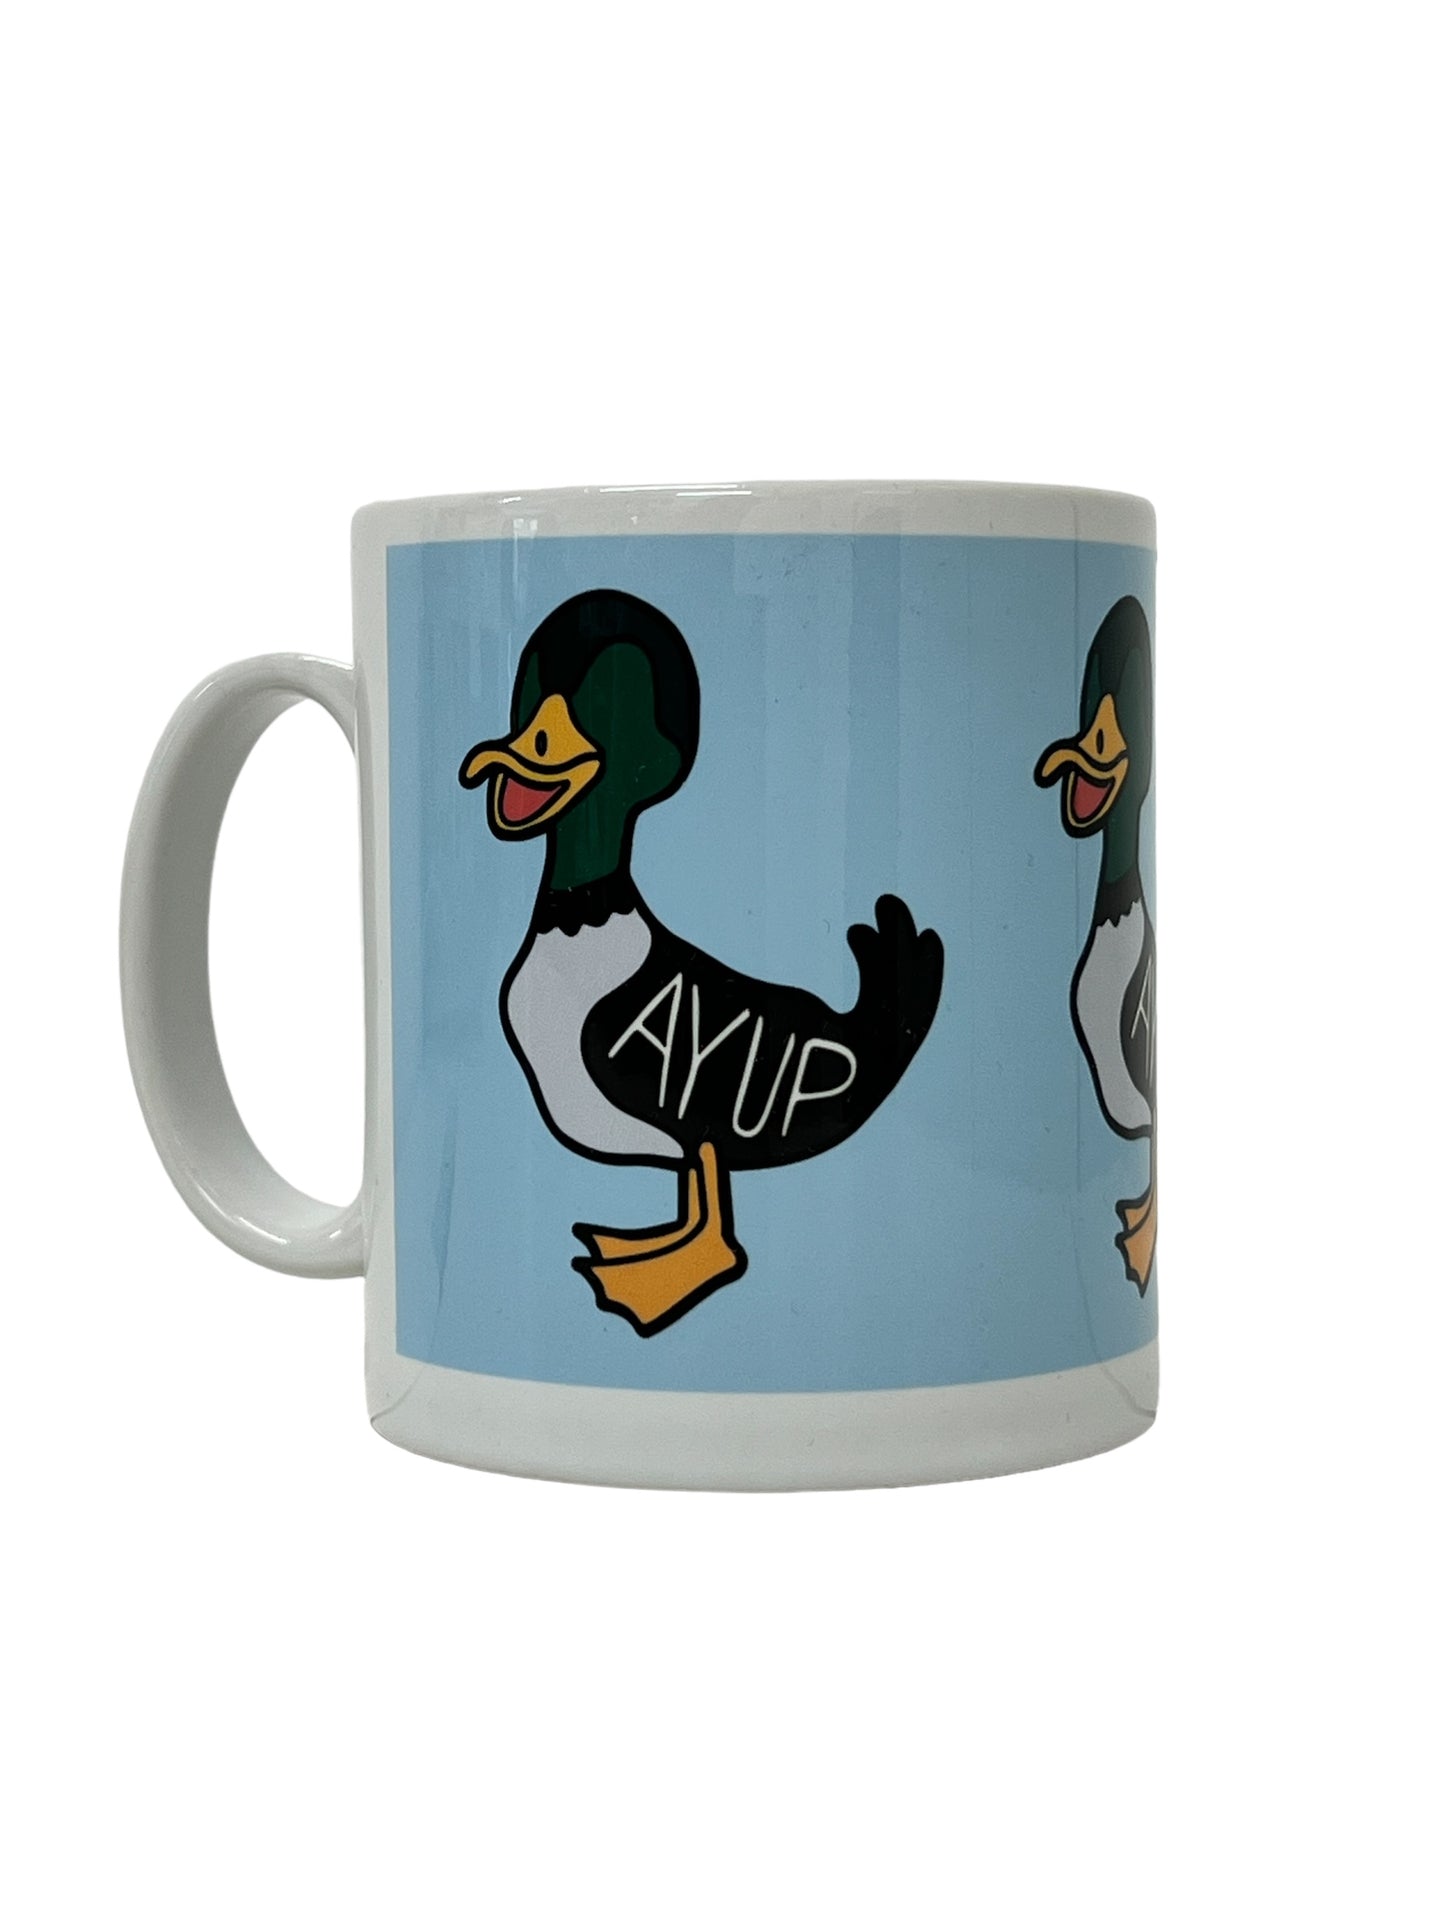 Ayup Duck - Yorkshire Slang Mug - Luke Horton